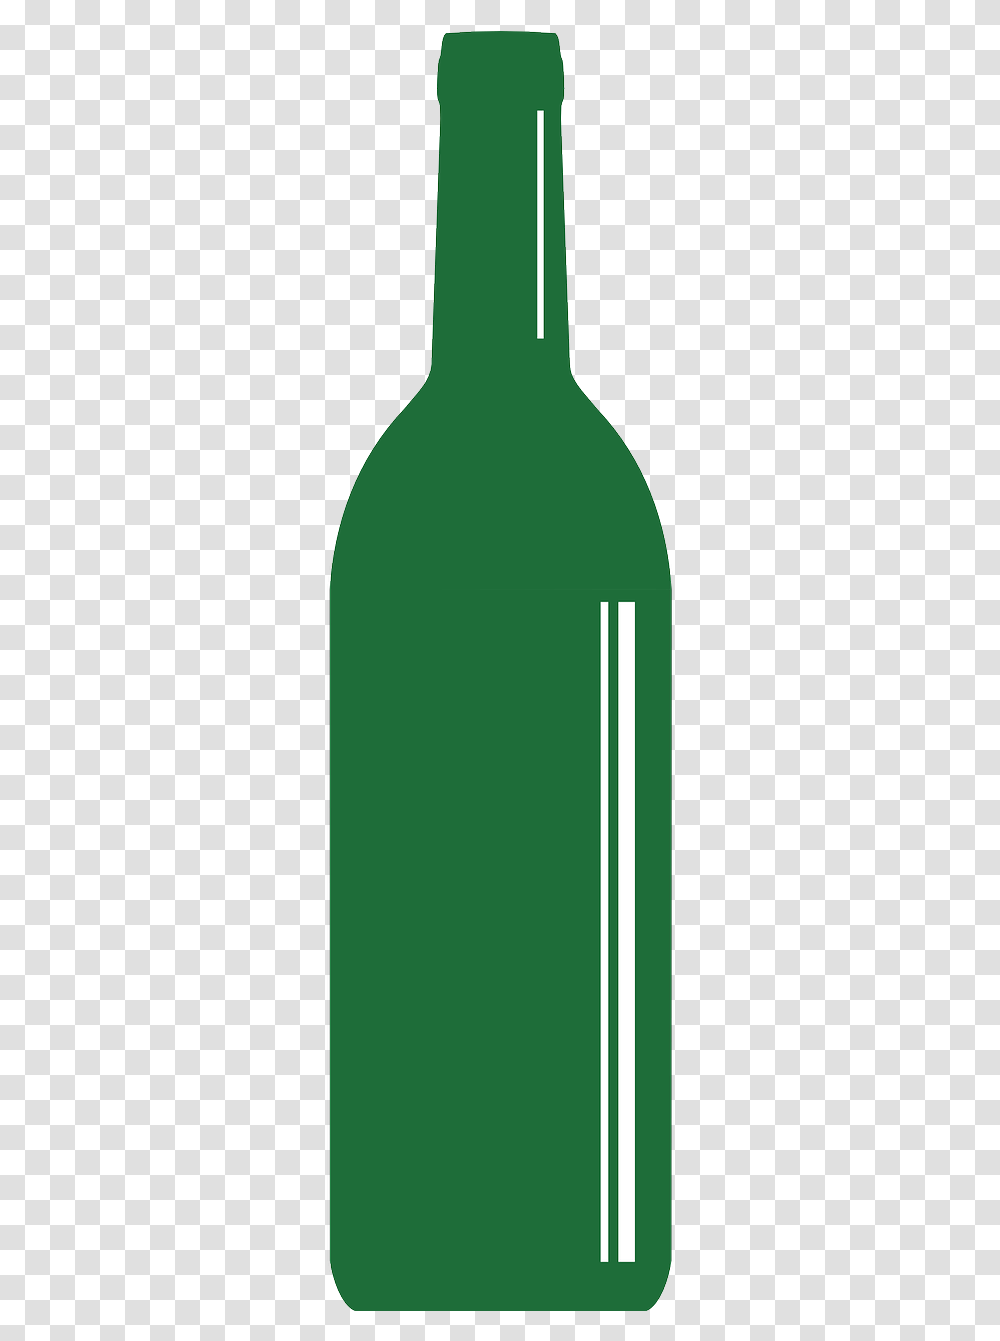 Glass Bottle, Green, Beverage, Face, Pop Bottle Transparent Png